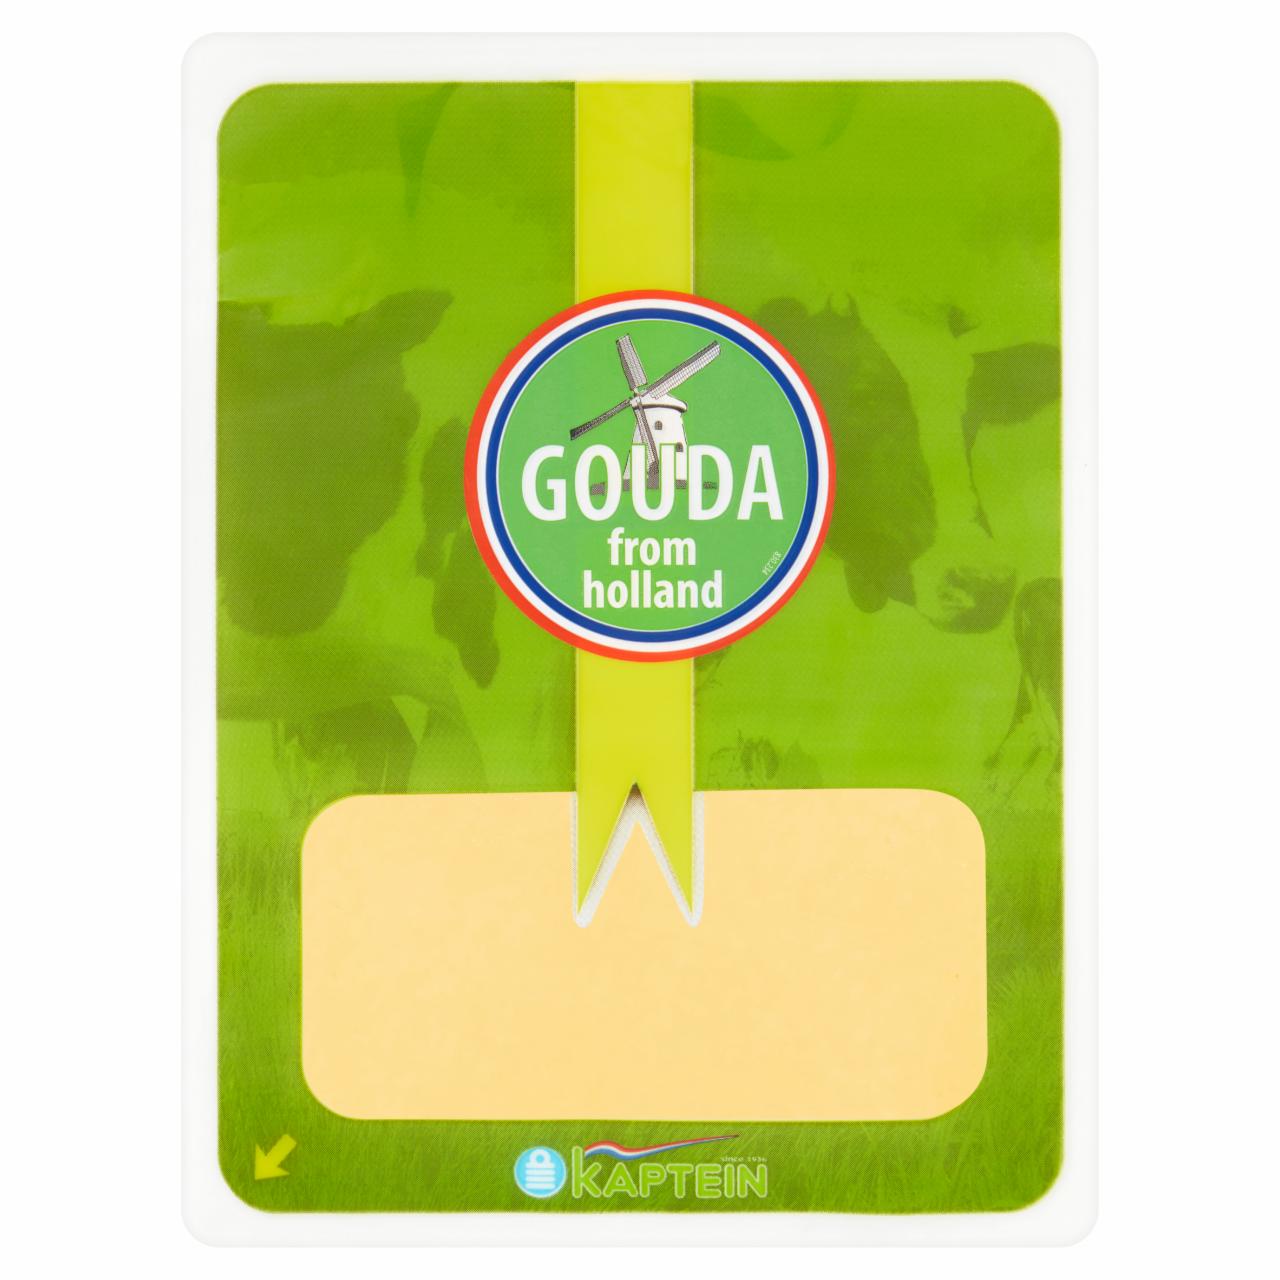 Képek - Kaptein Gouda félkemény érlelt sajt 100 g